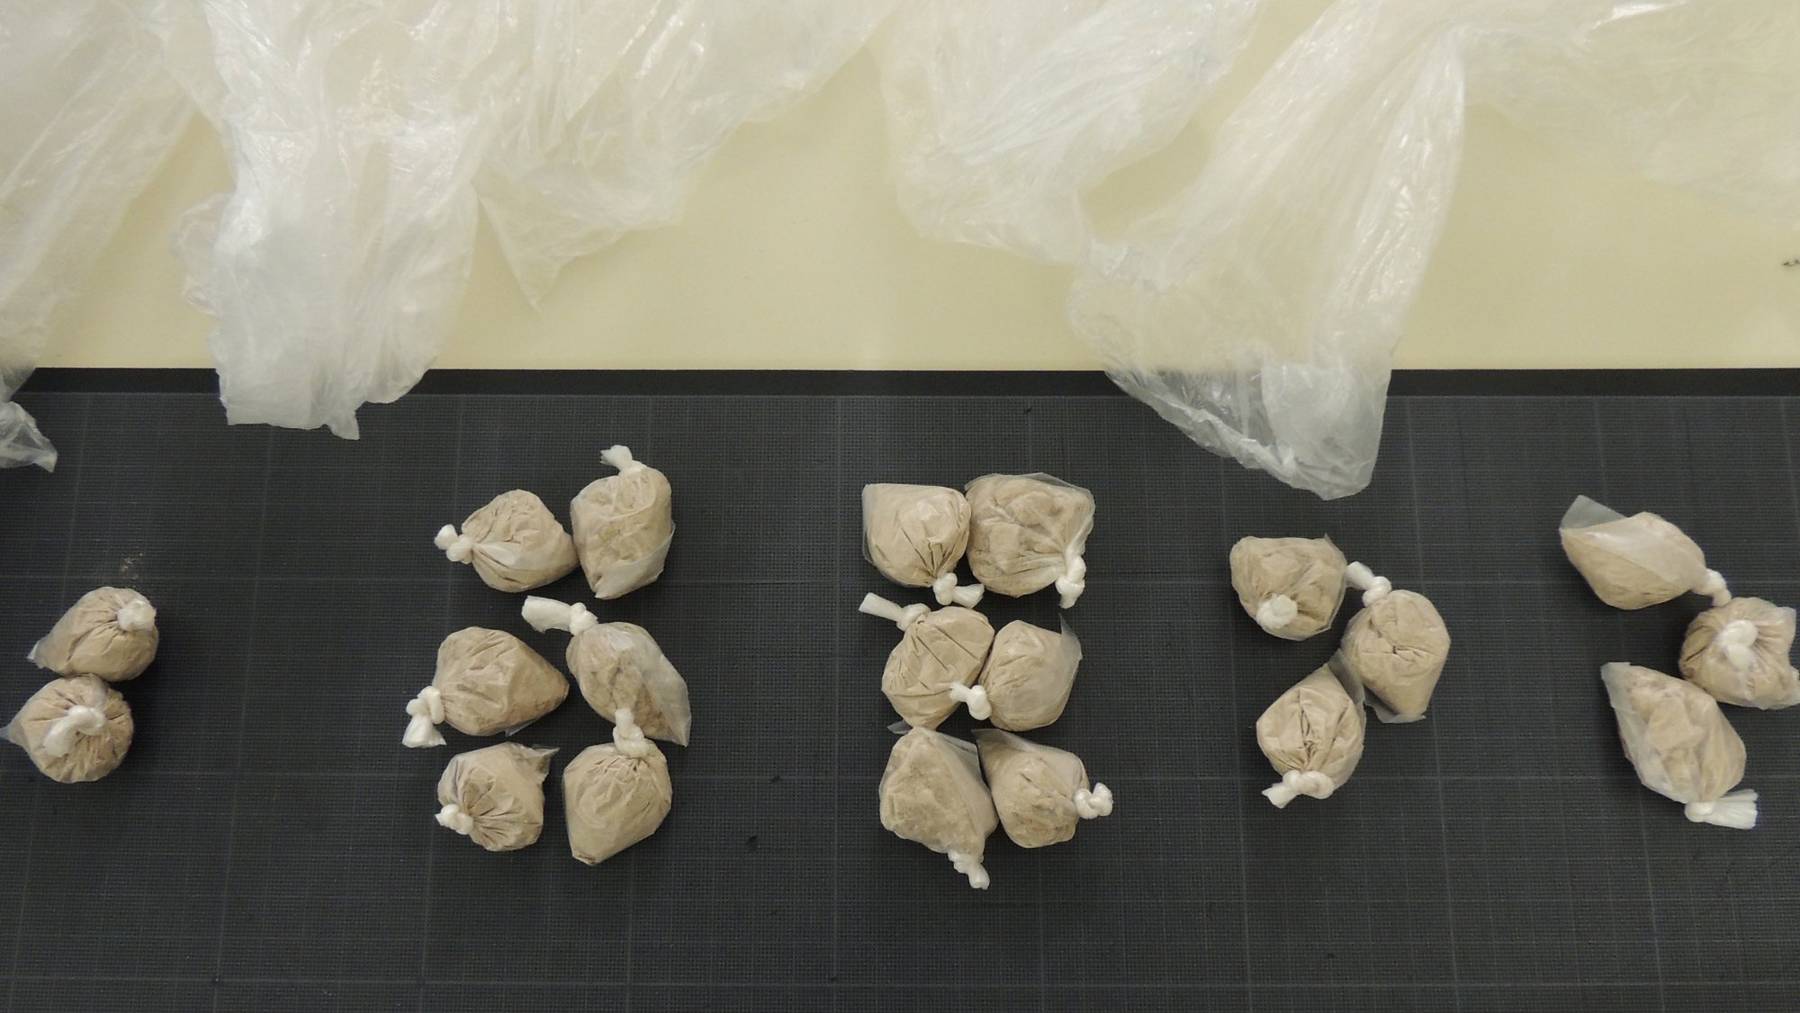 Das sichergestellte Heroin ist in 5-Gramm-Päckchen verpackt.